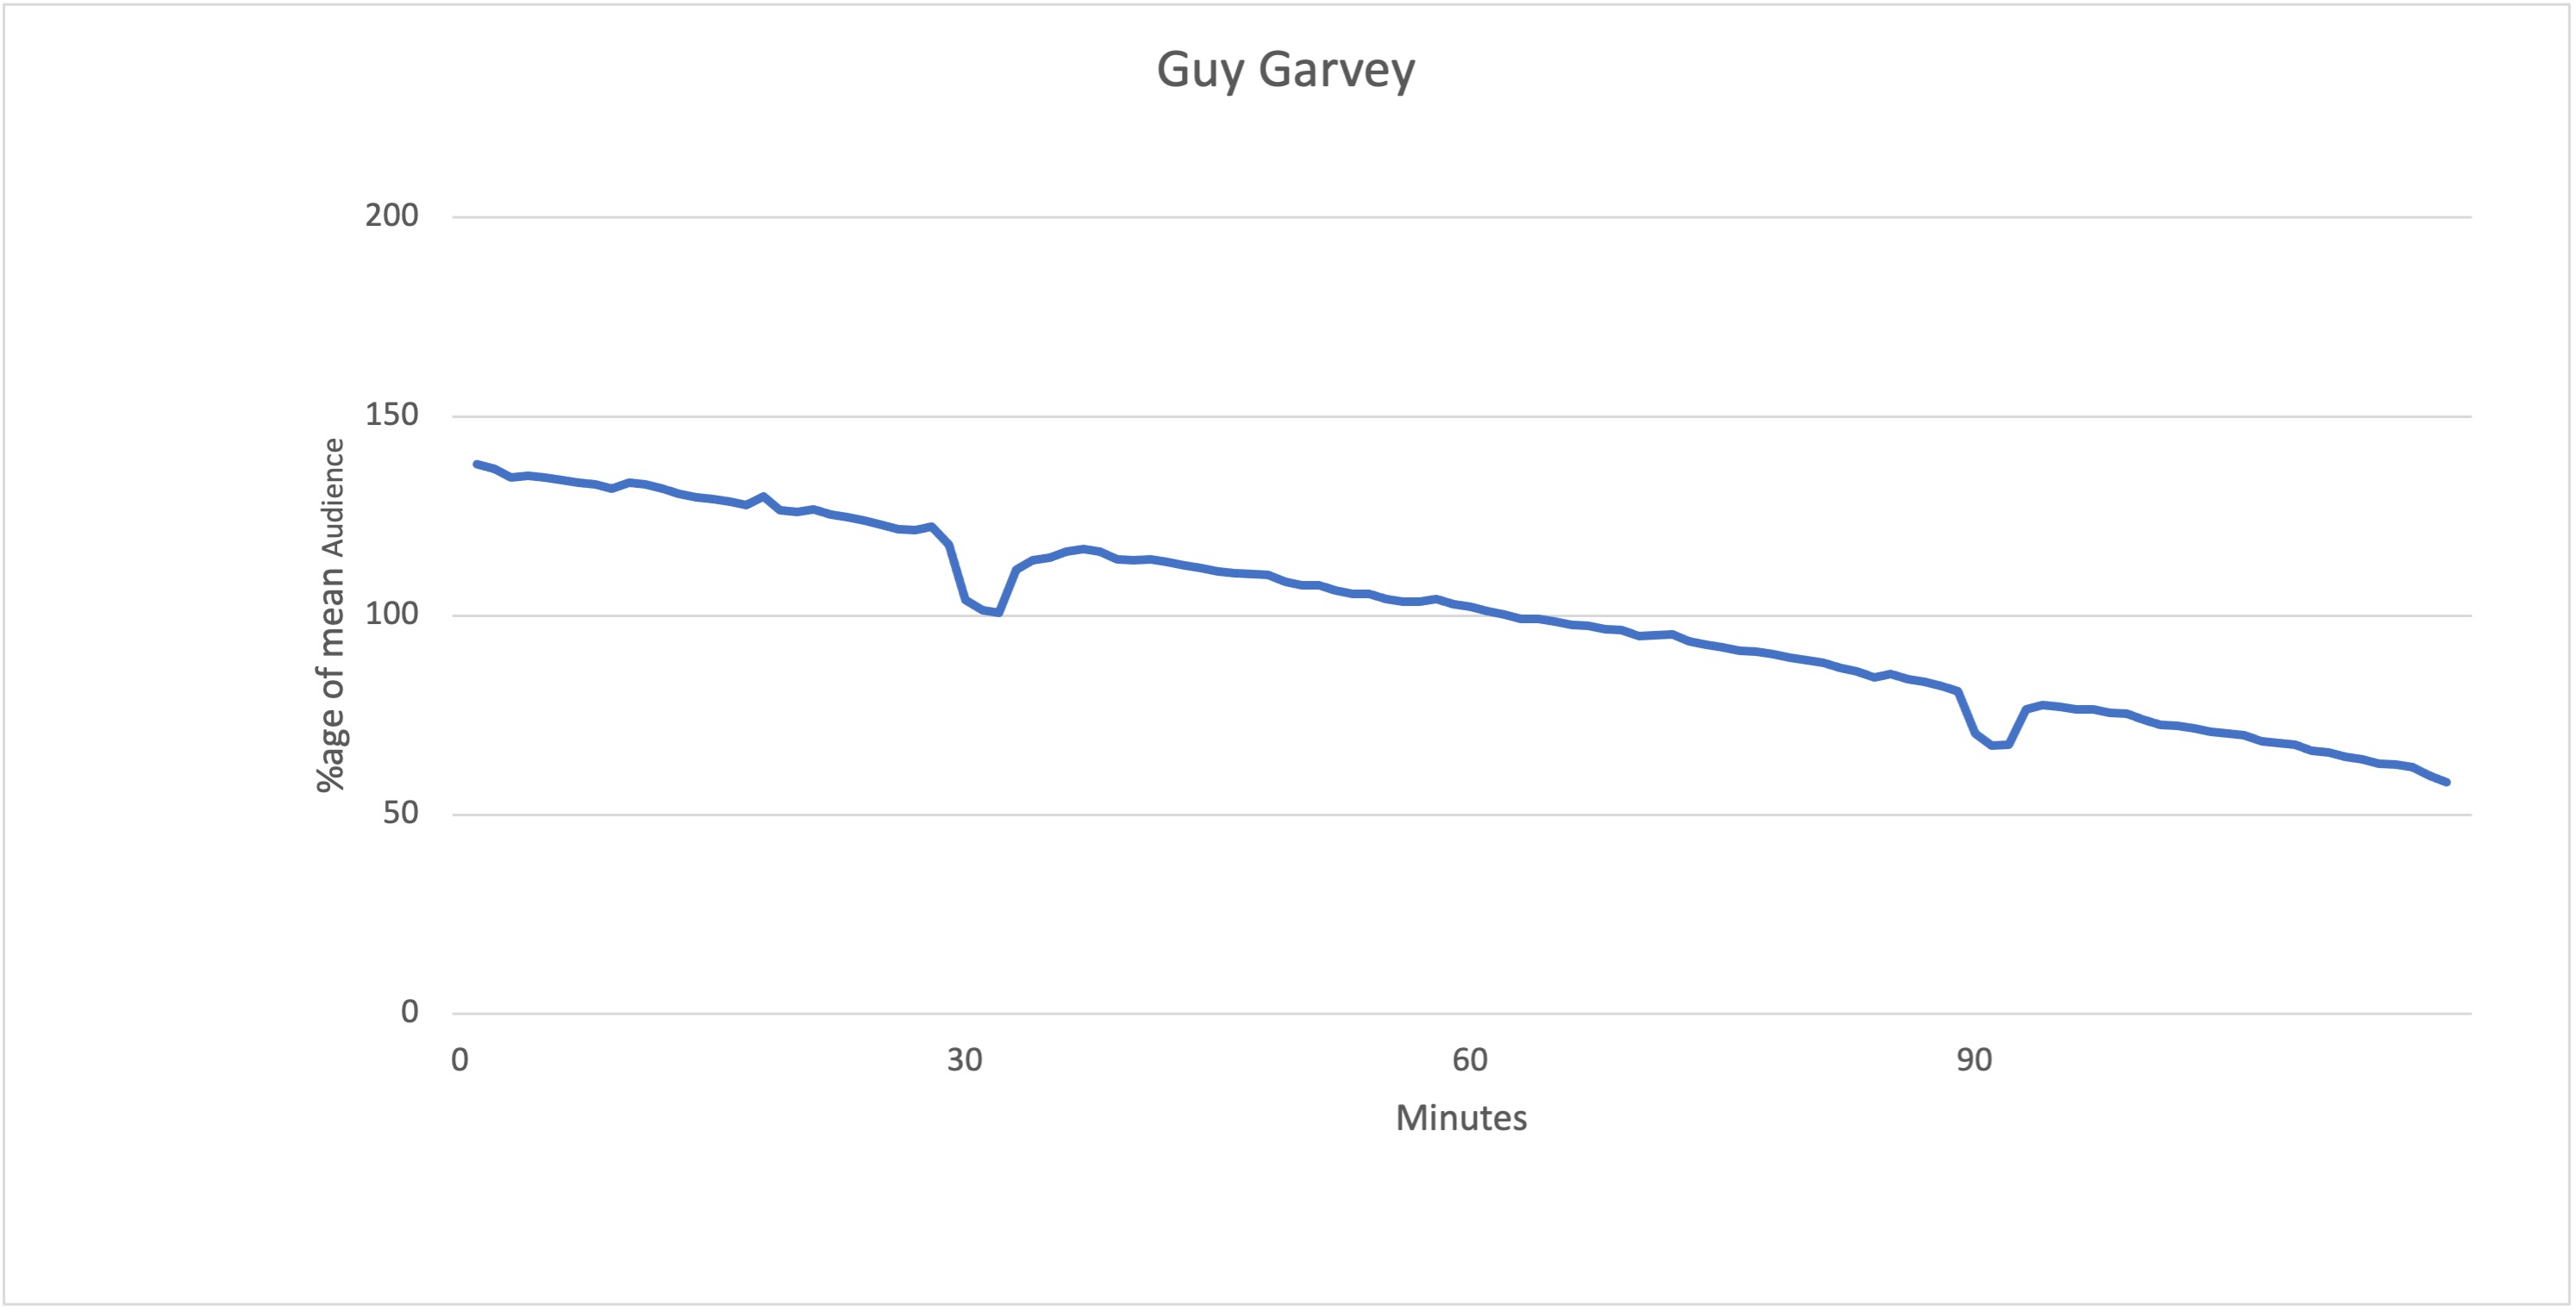 Guy Garvey’s skips